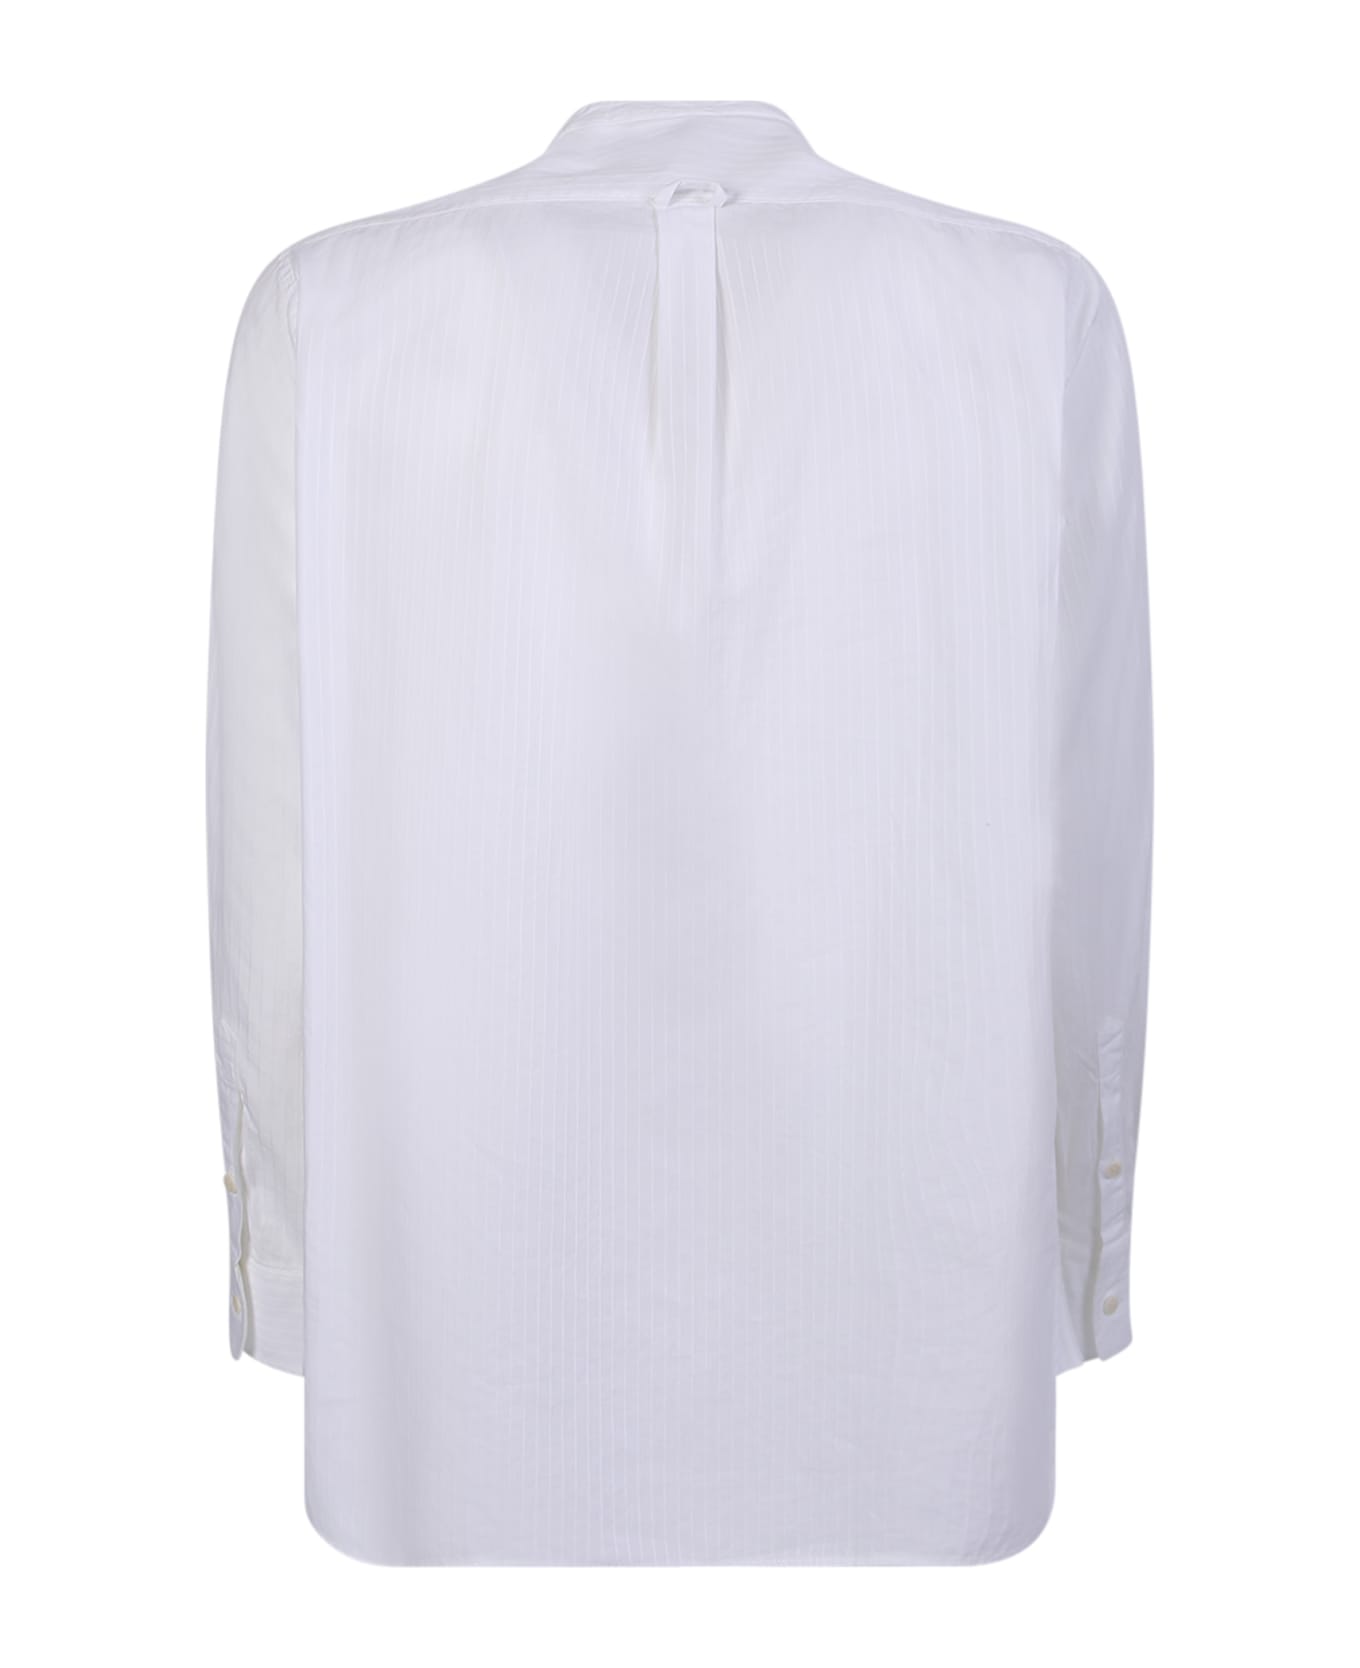 Original Vintage Style Korean Collar White Shirt - White